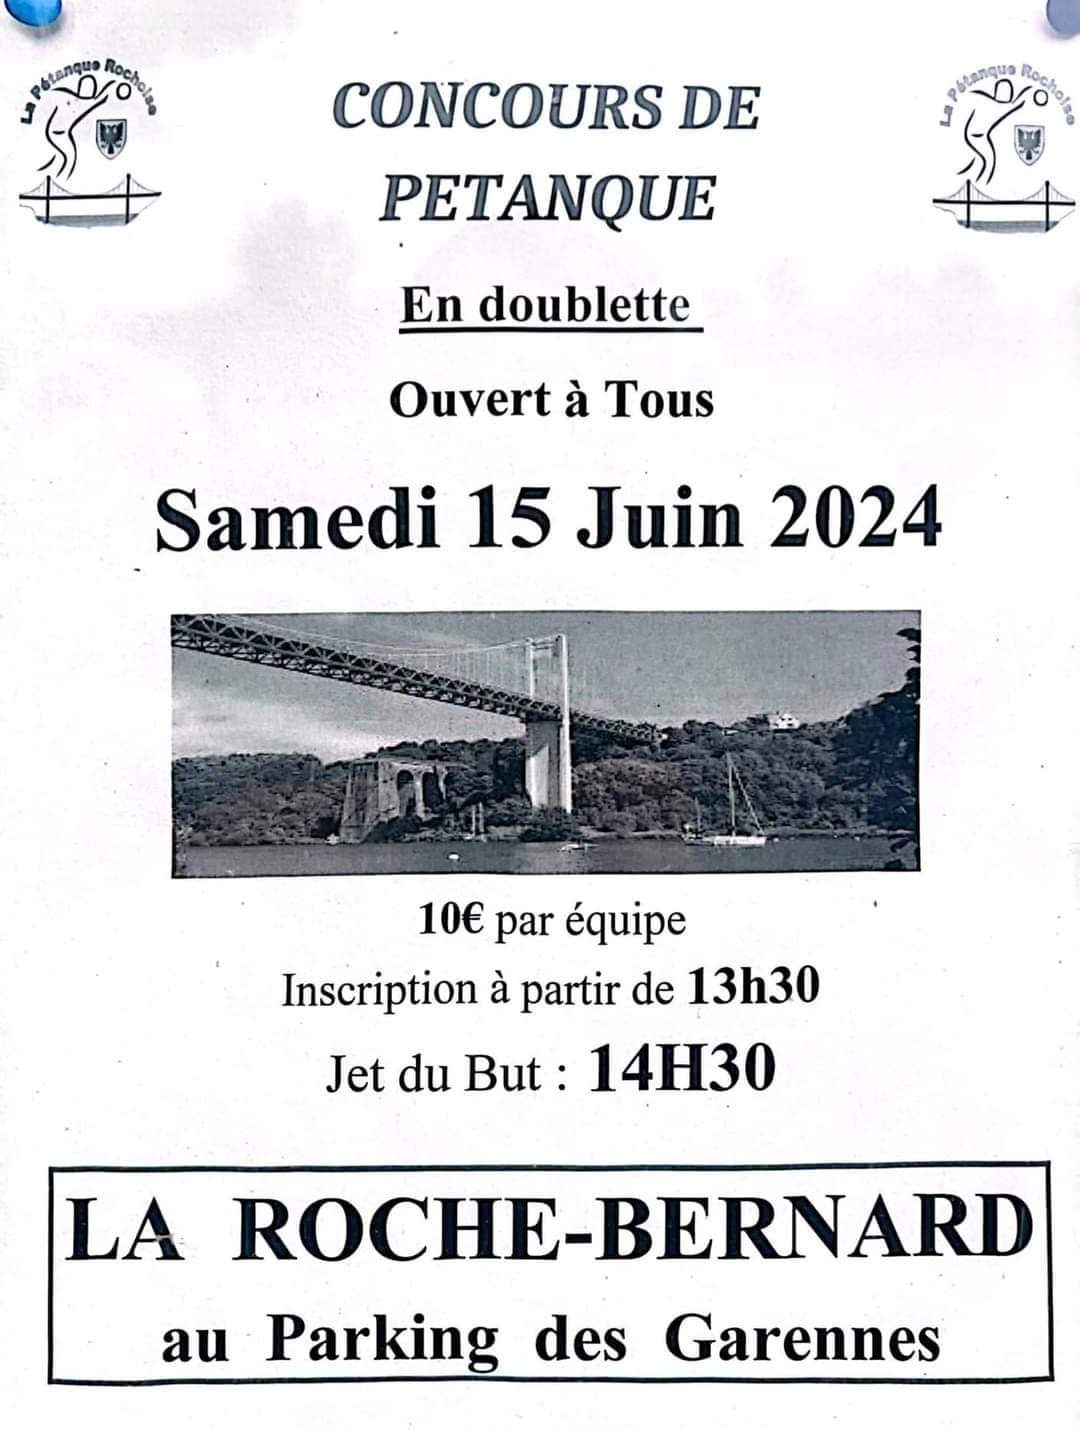 Concours de pétanque Ouvert à tous - La Roche-Bernard